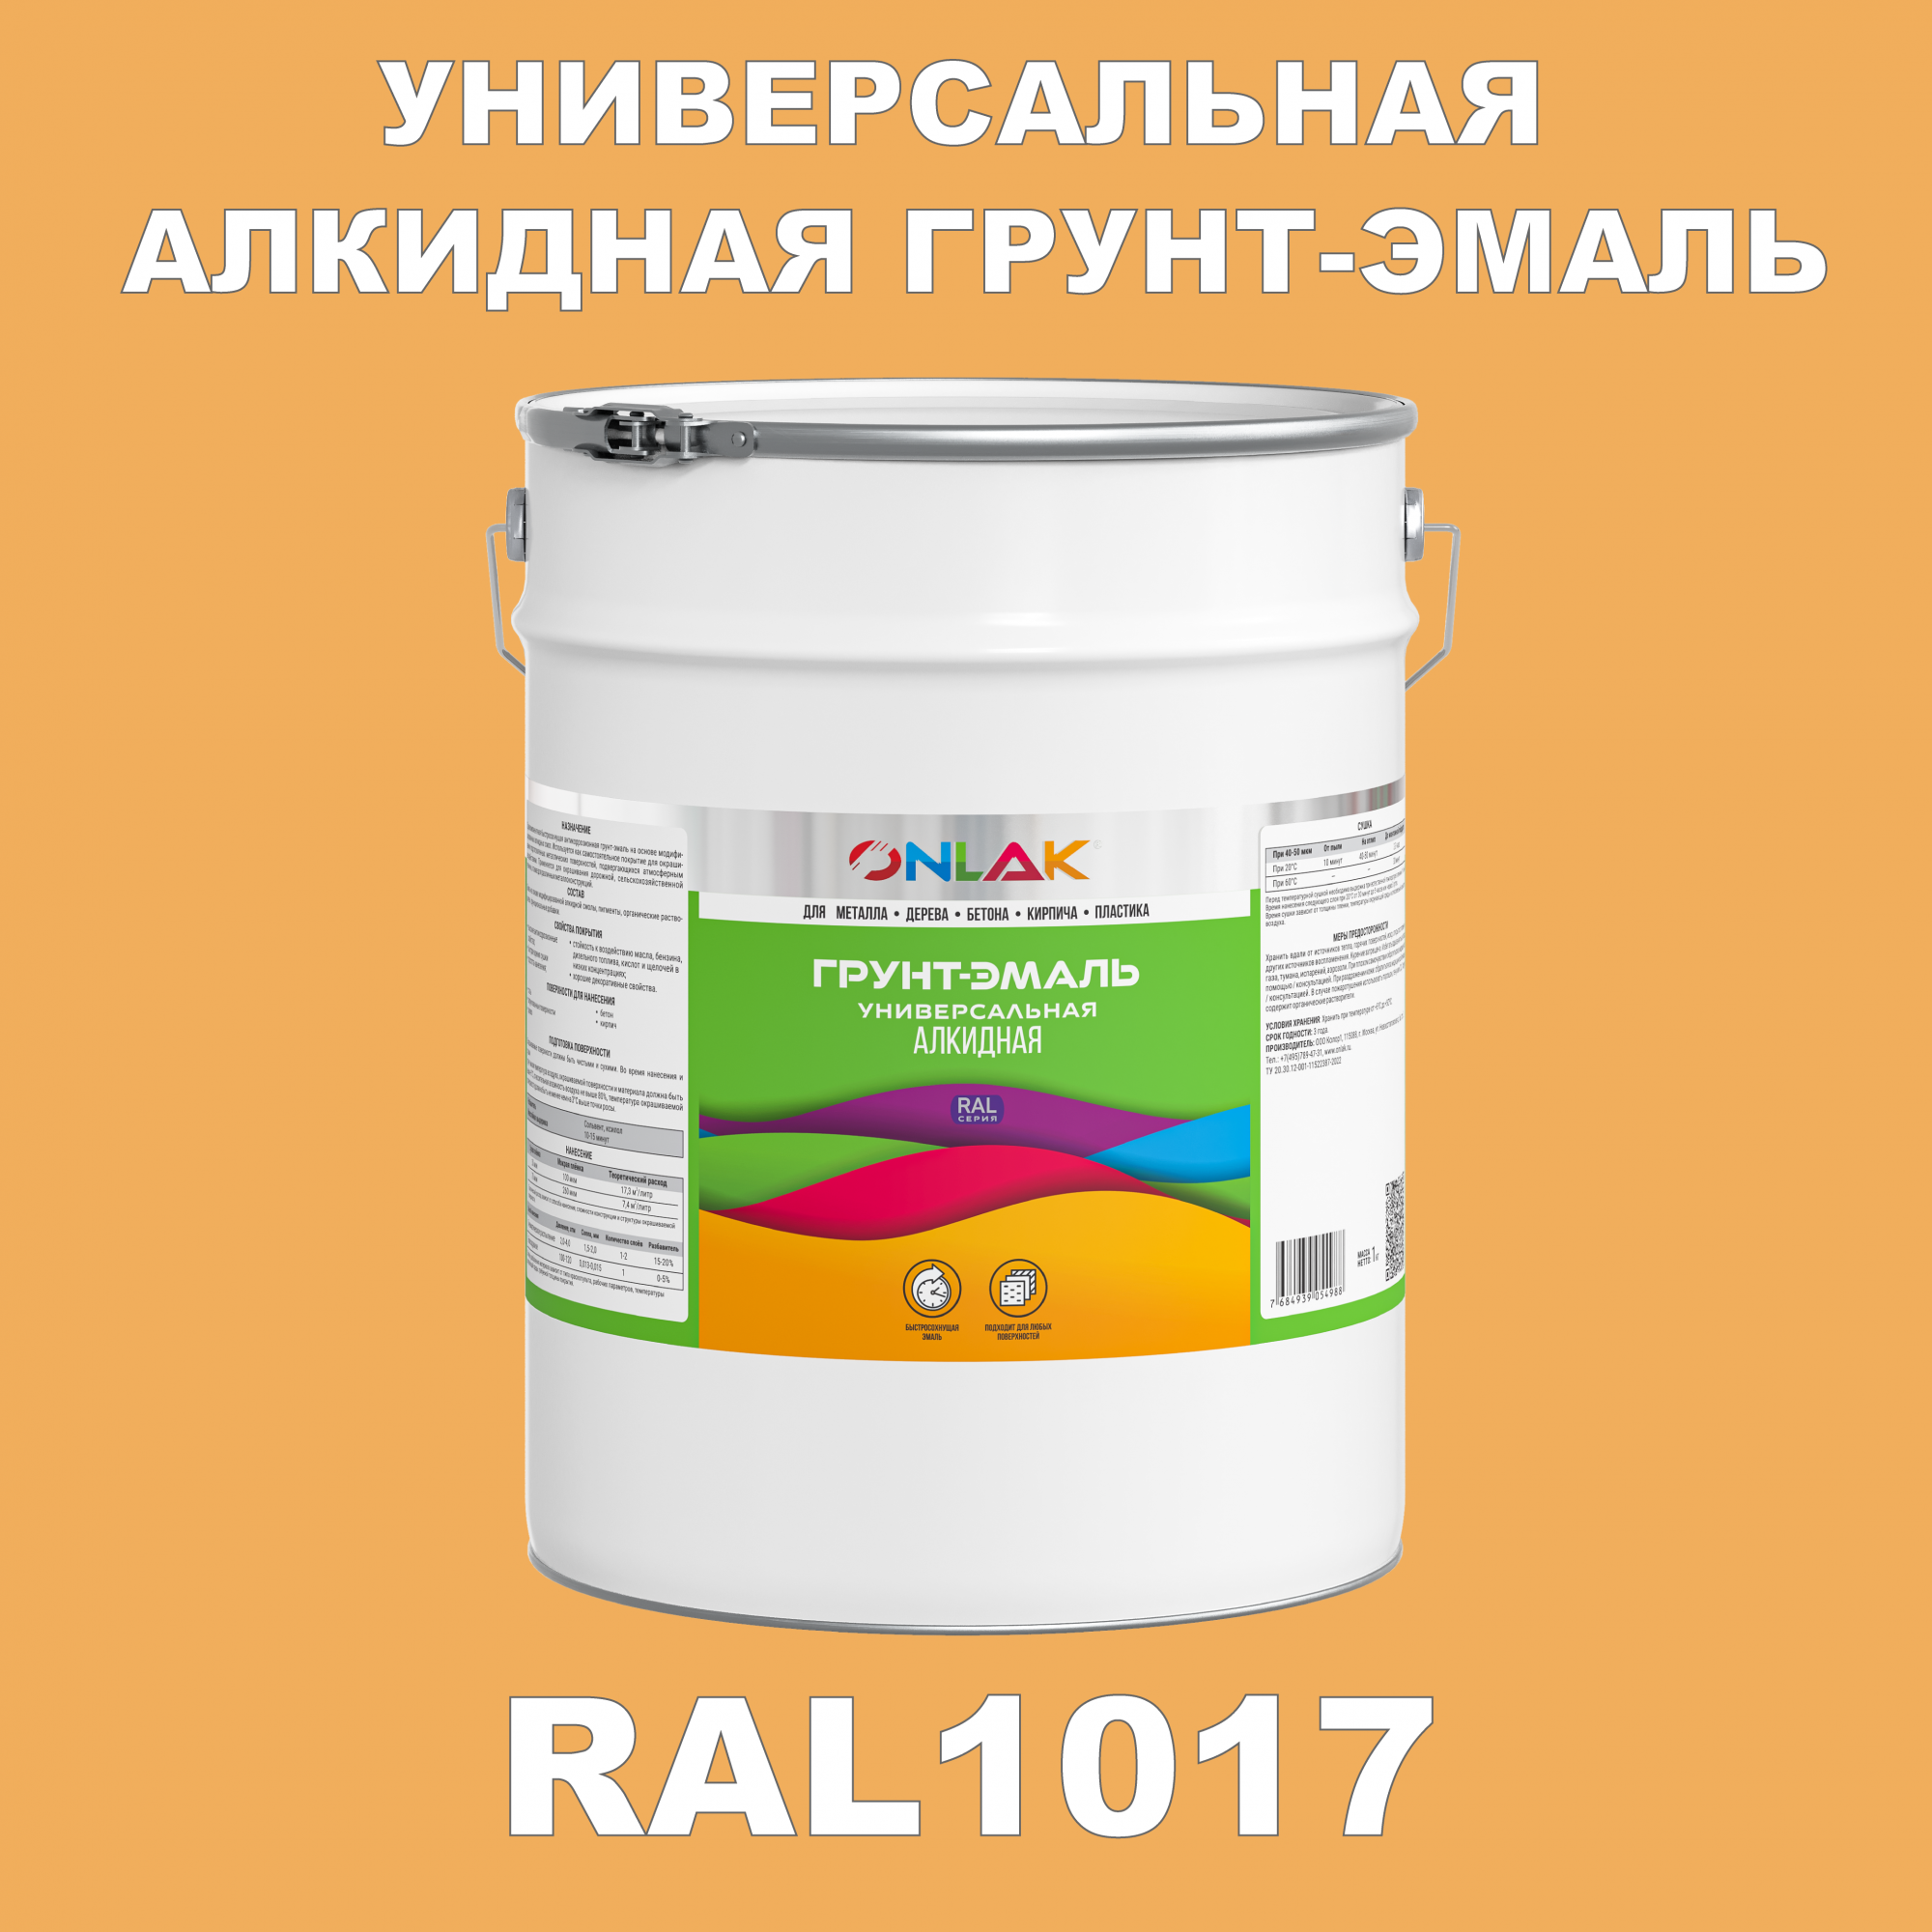 Грунт-эмаль ONLAK 1К RAL1017 антикоррозионная алкидная по металлу по ржавчине 20 кг грунт эмаль yollo по ржавчине алкидная серая 0 9 кг